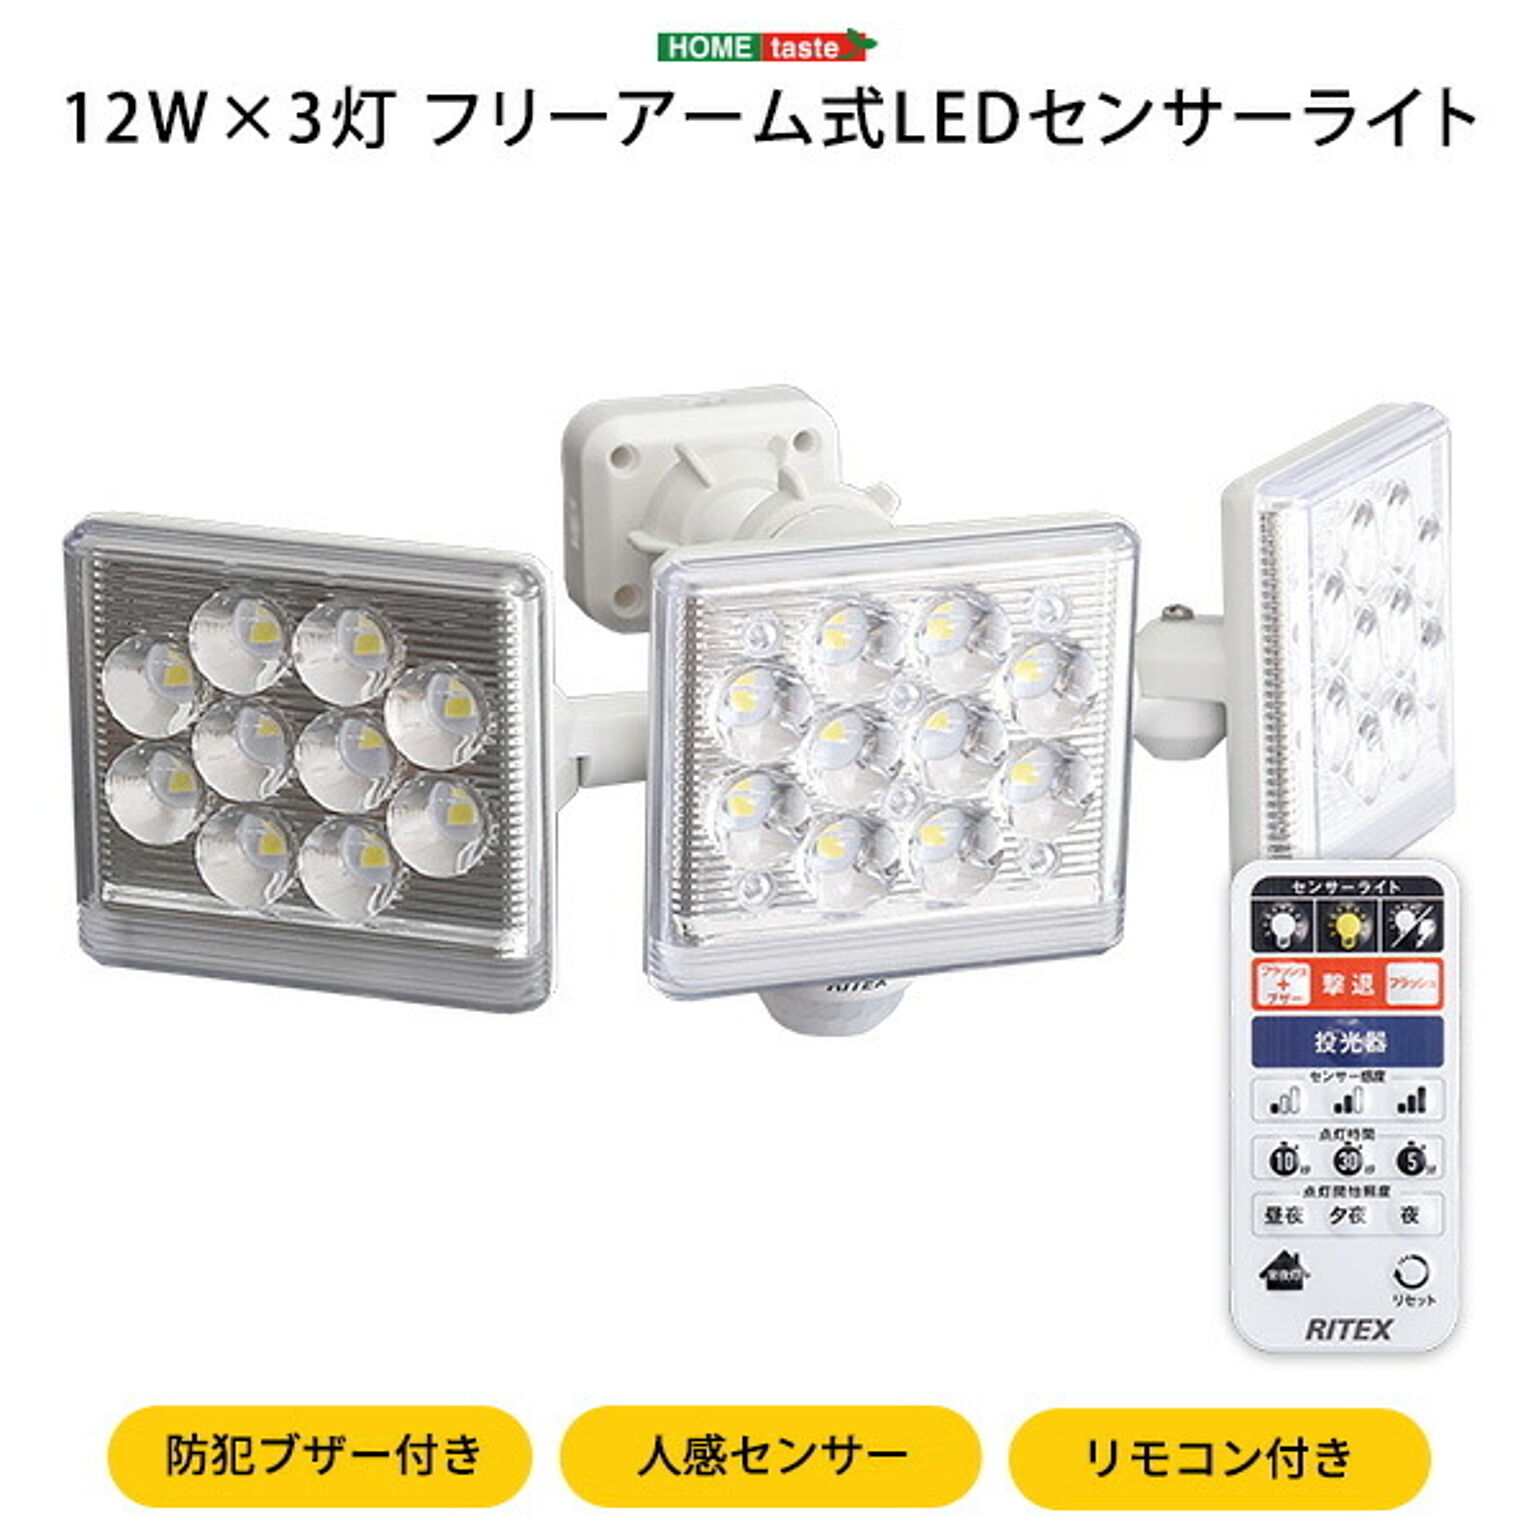 ホームテイスト 12W×3灯フリーアーム式LEDセンサーライト